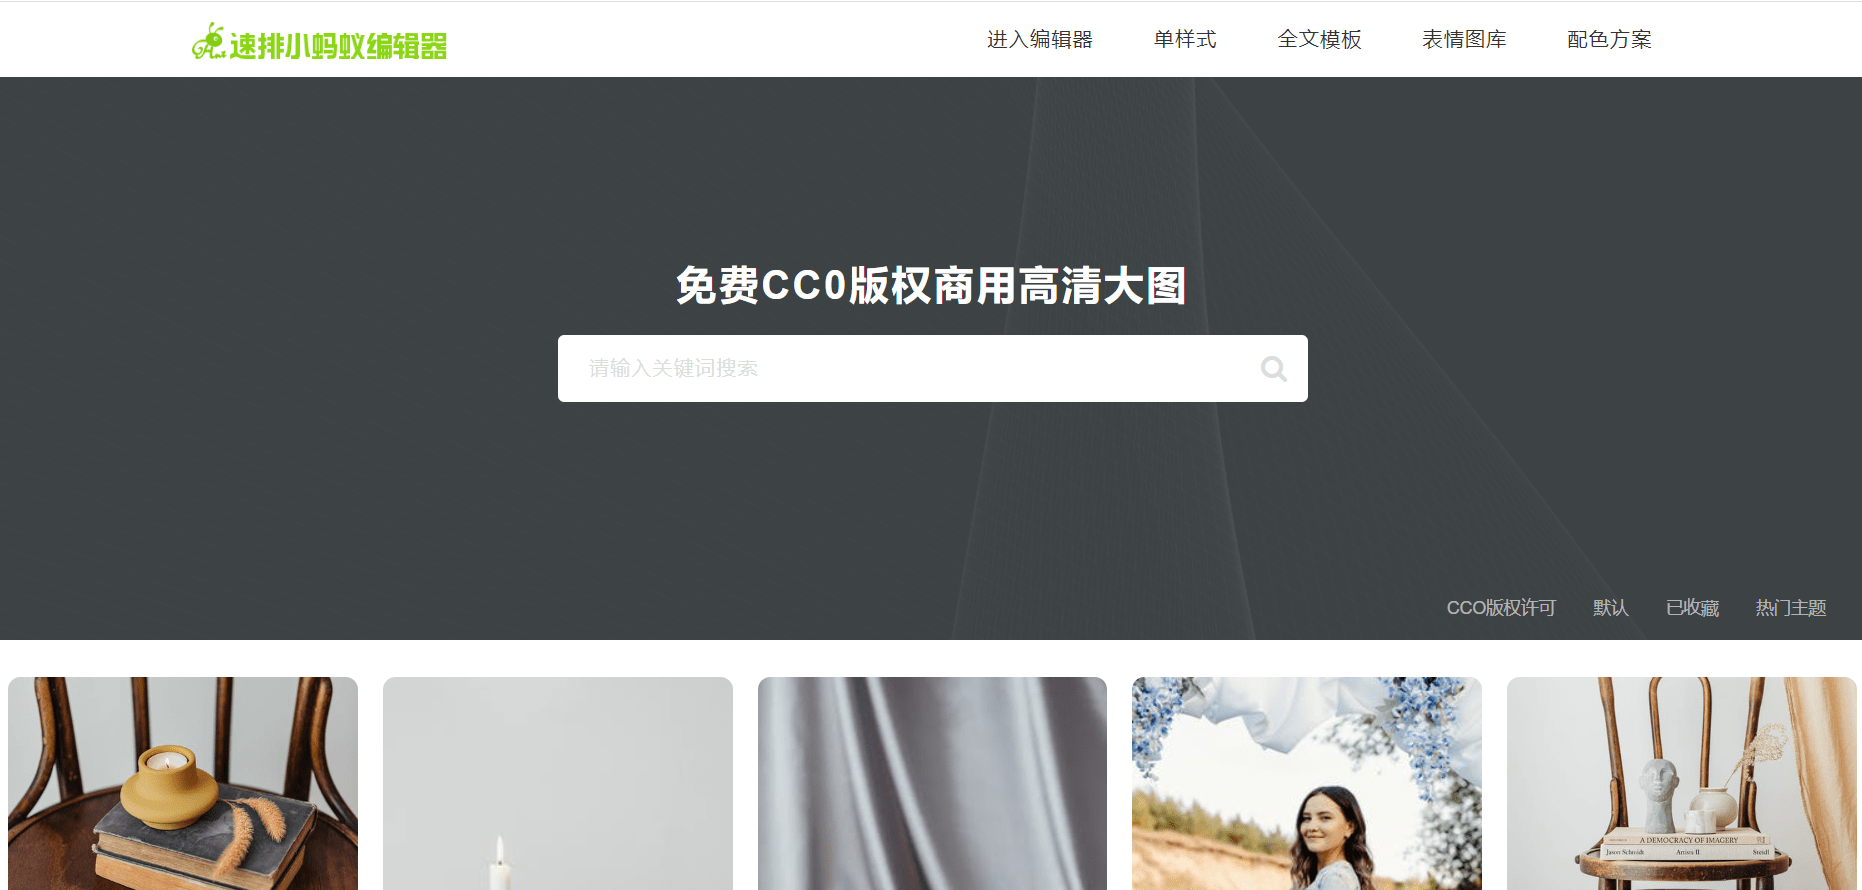 找图片只知道视觉中国可不行？推荐几个设计师都在用的无版权图片网站